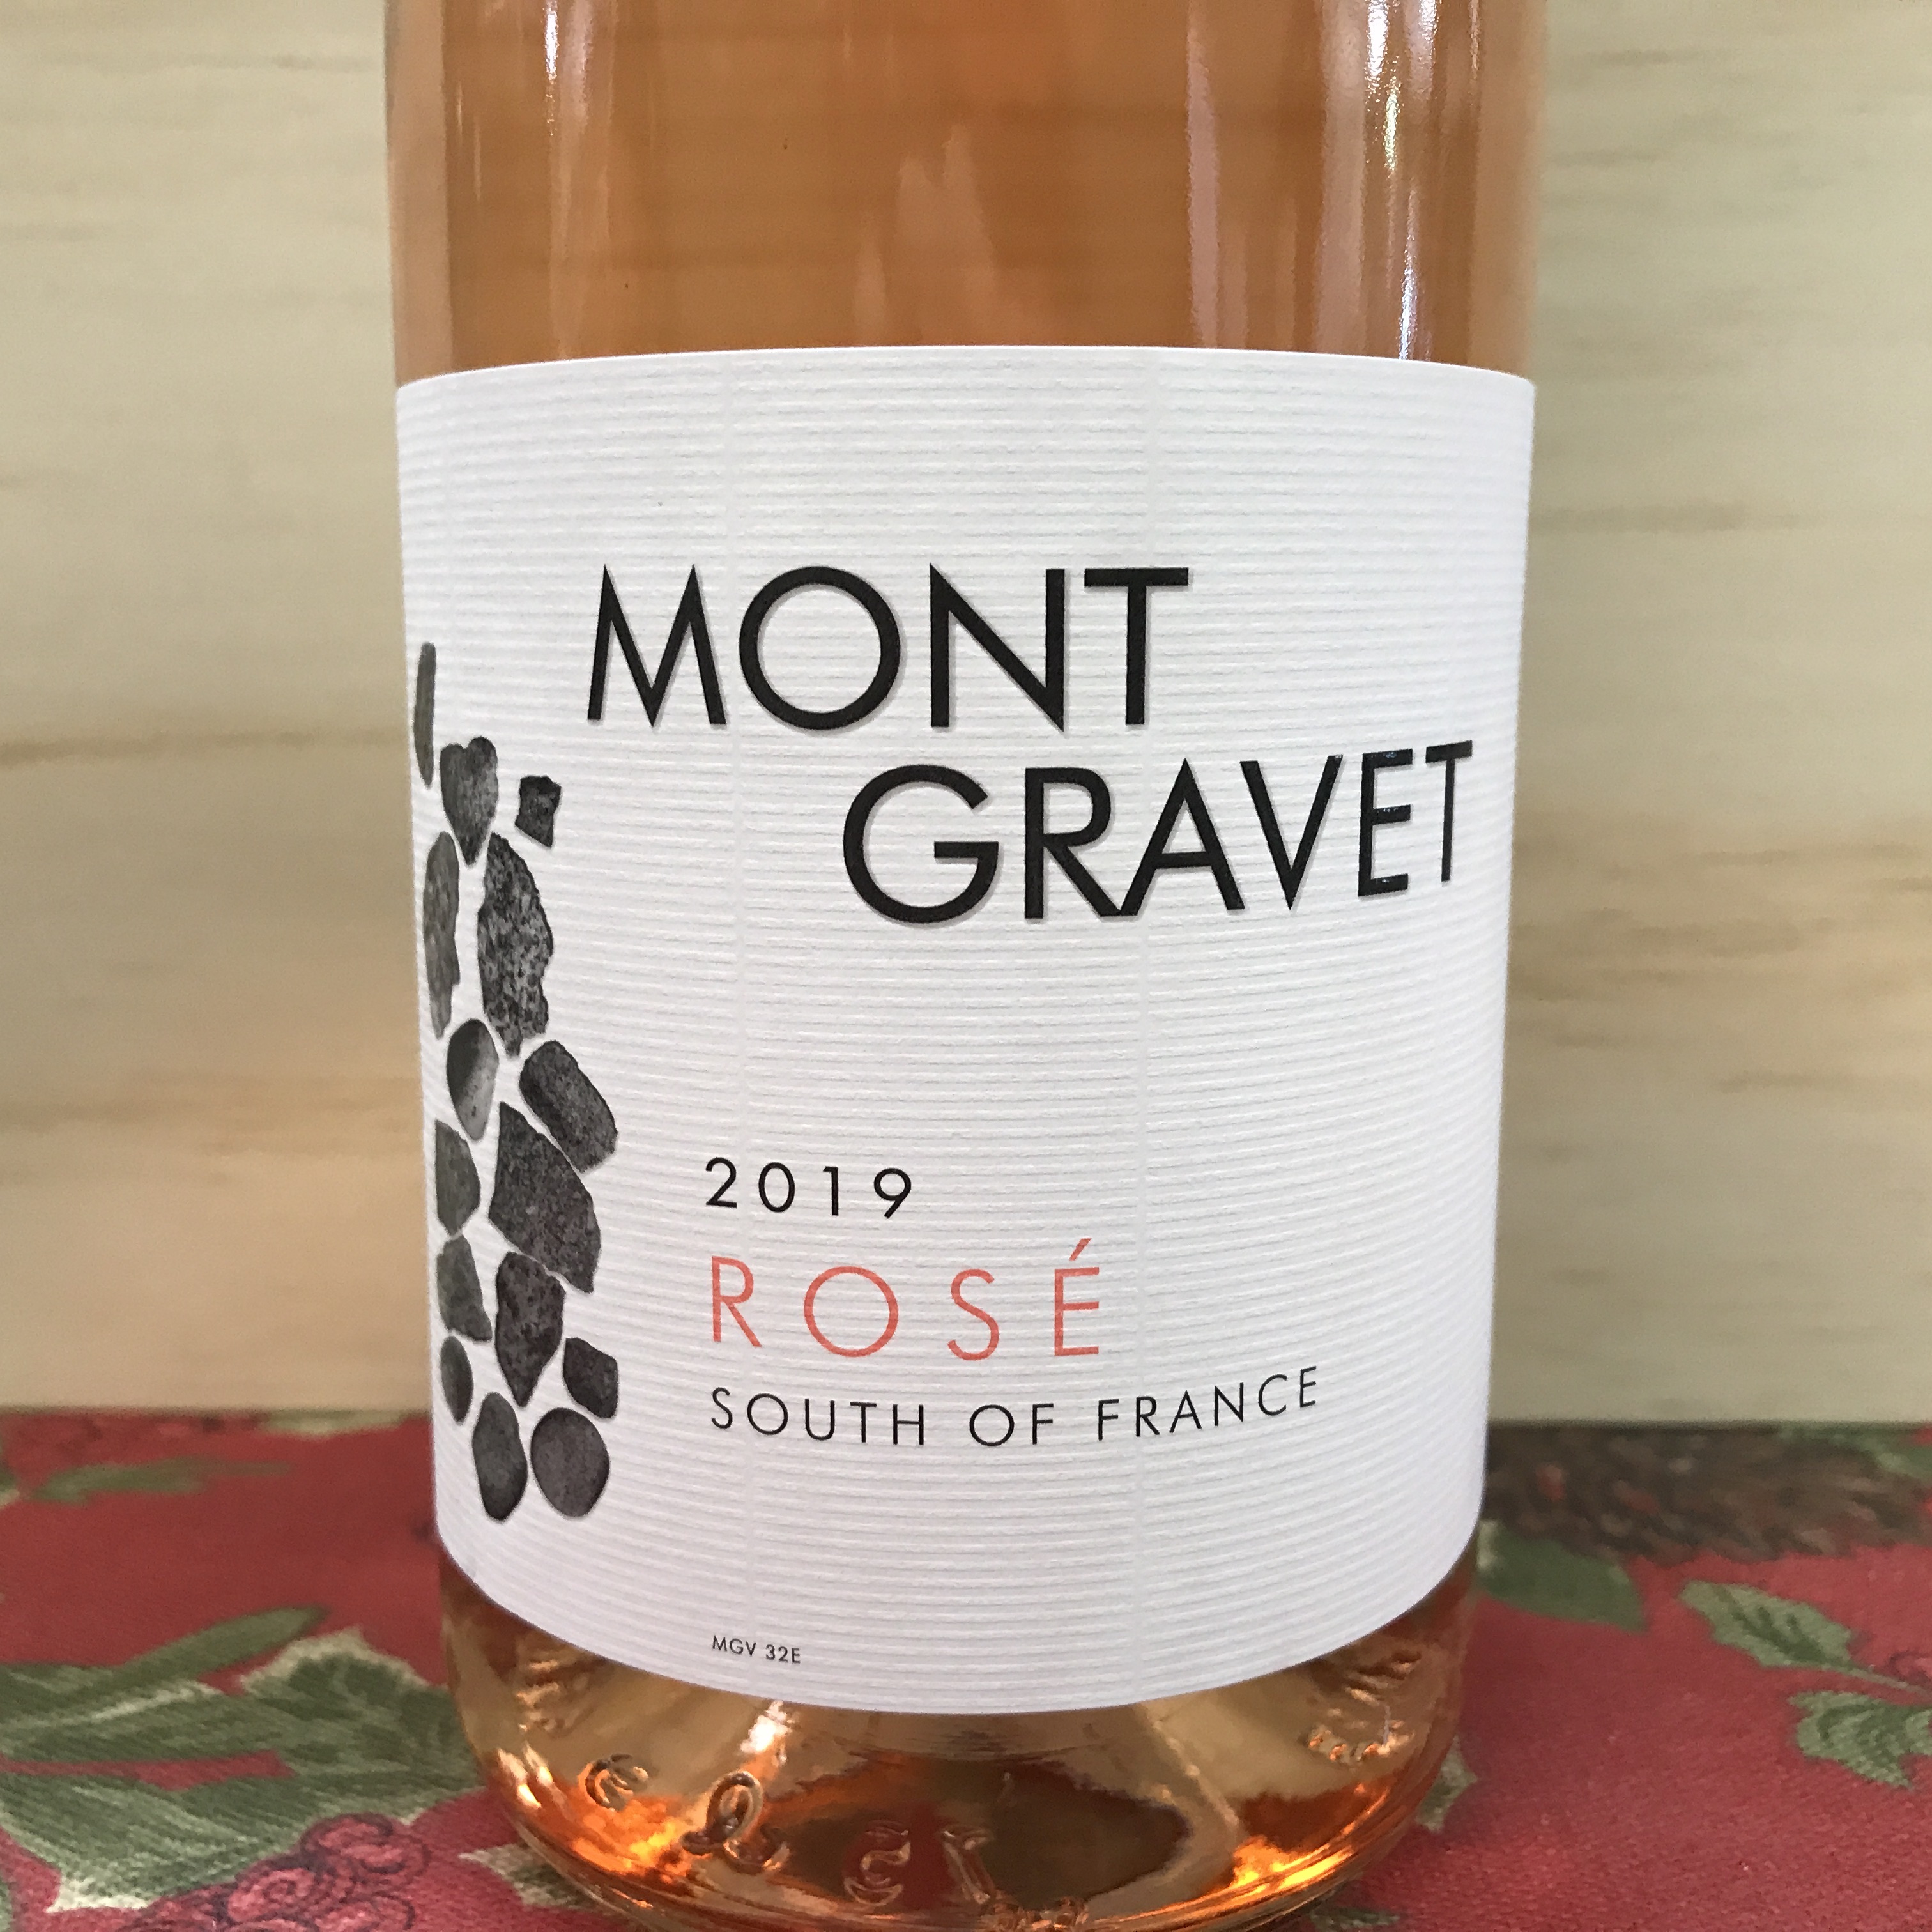 Mont Gravet Rose 2020